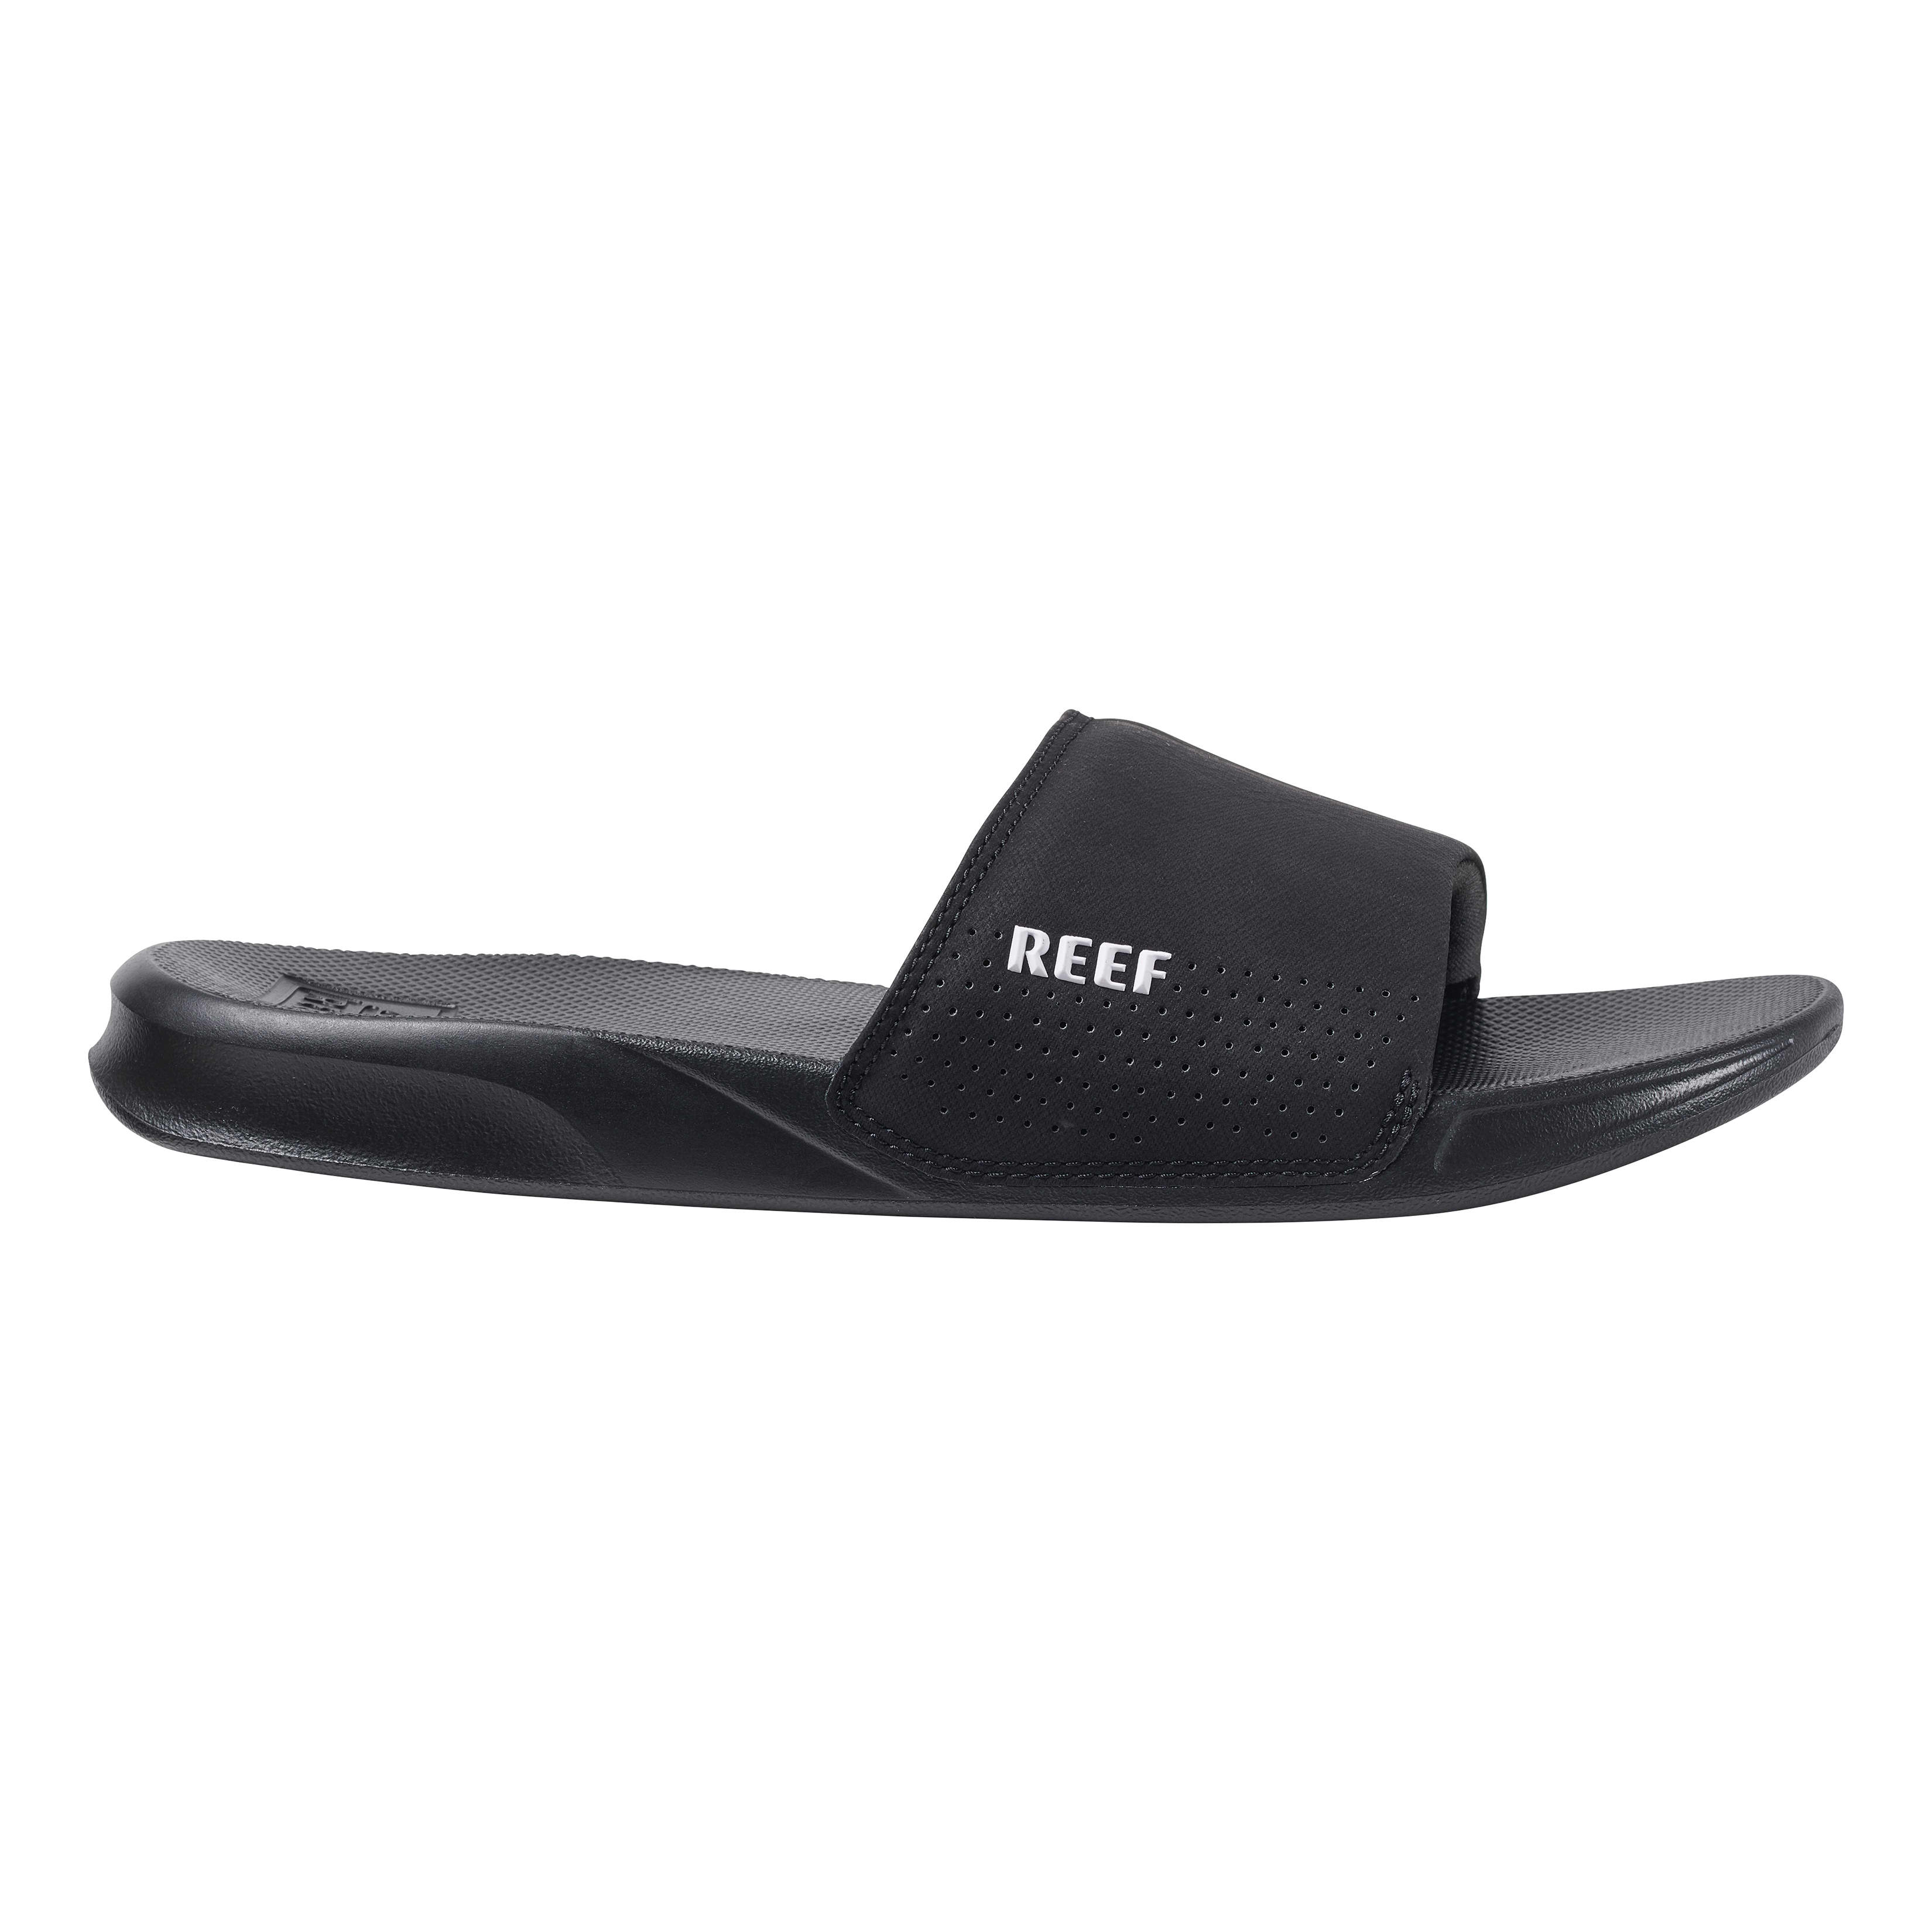 Reef® Men’s Reef One Slide Sandal - side